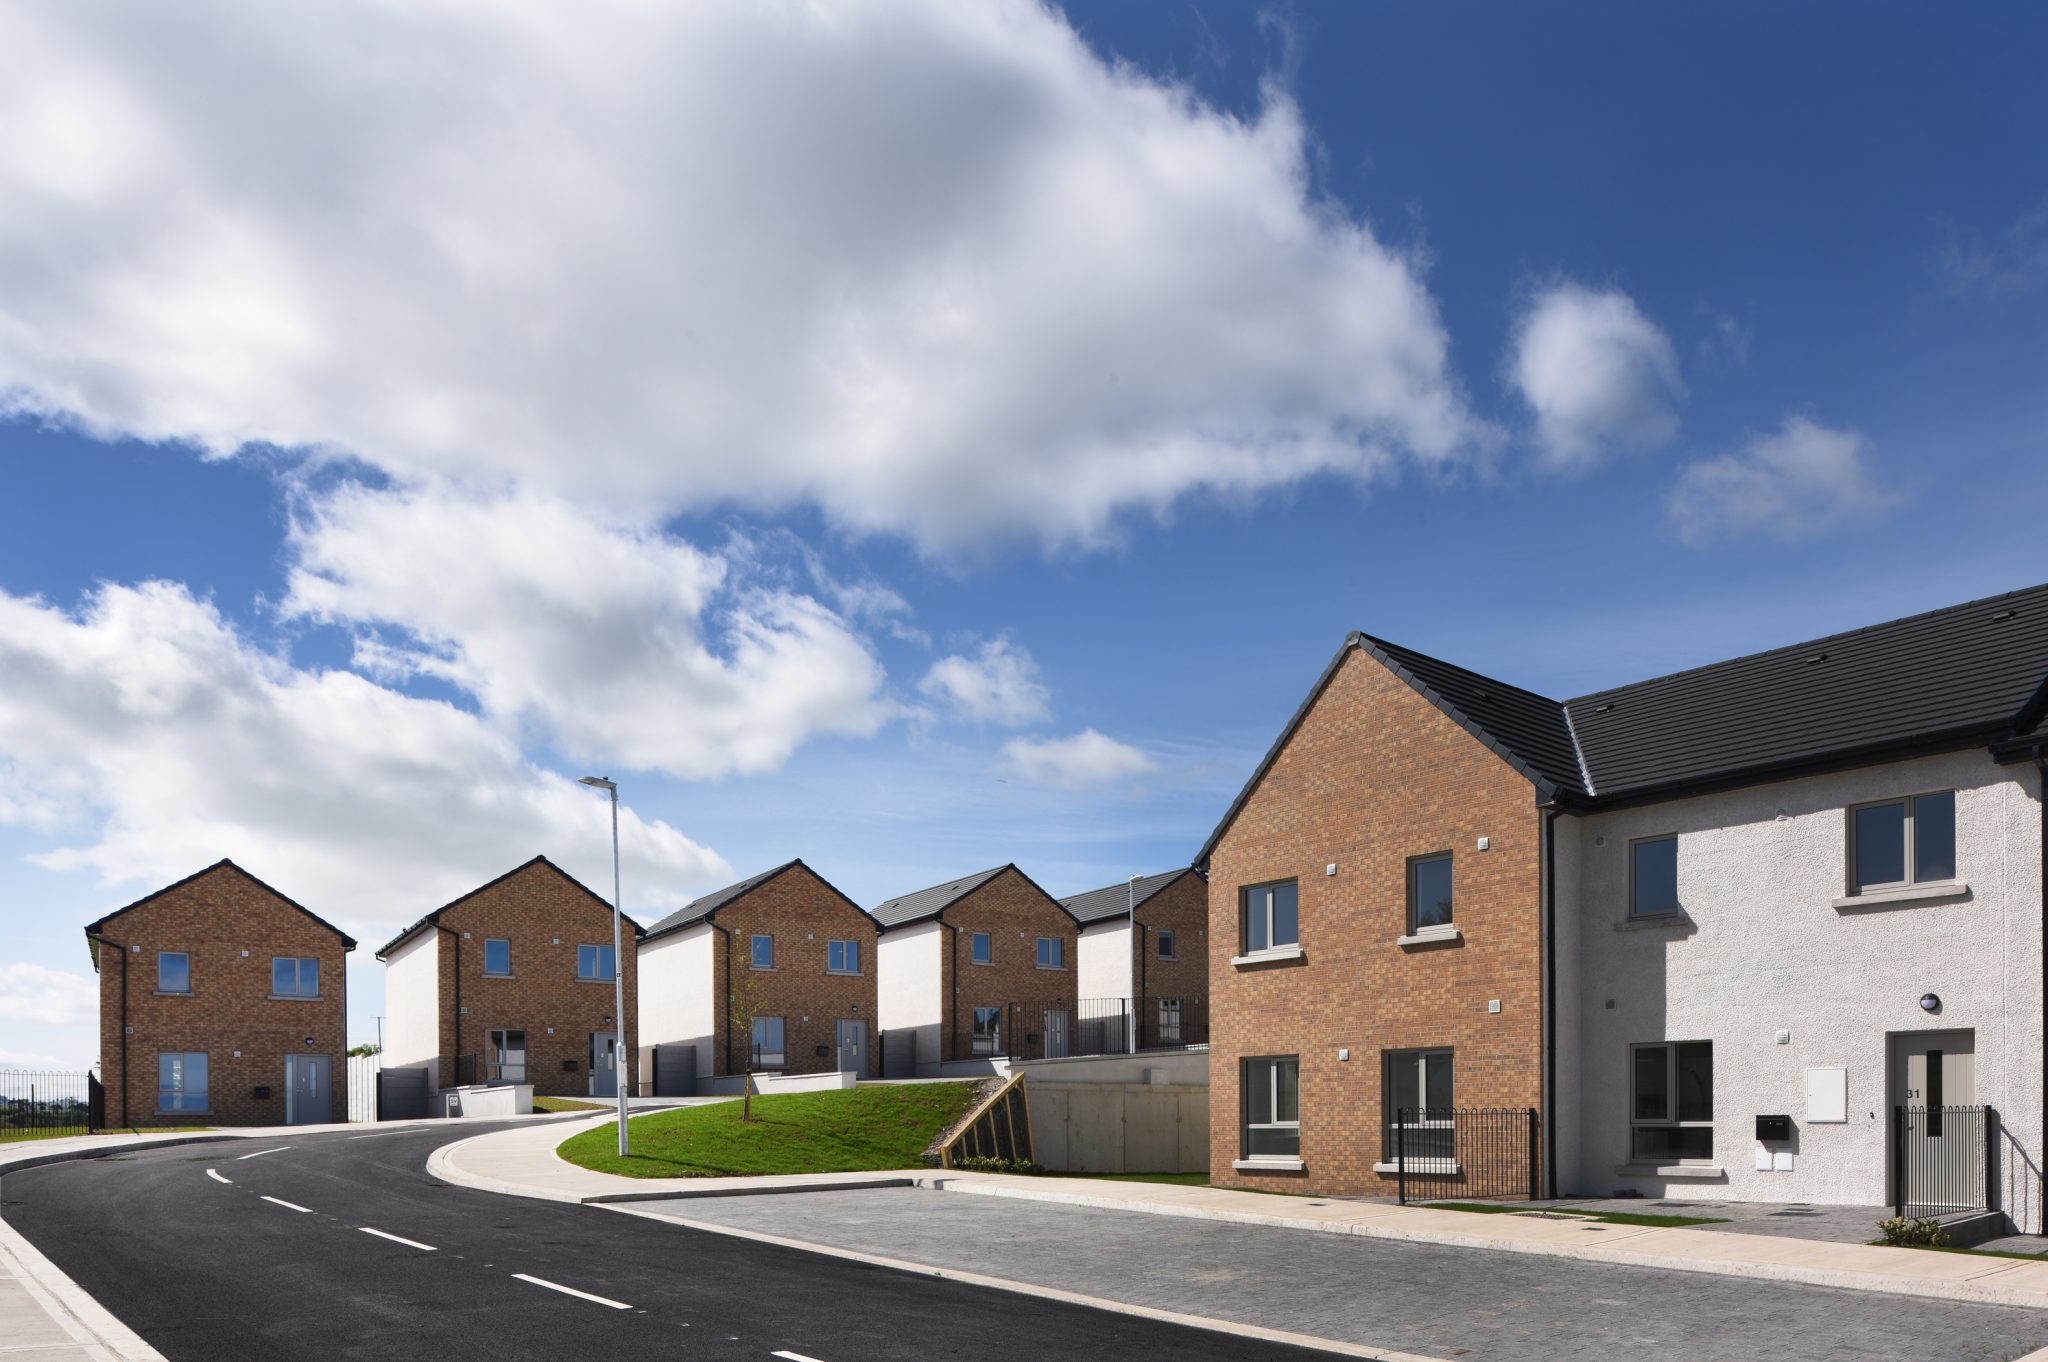 Ashtown Lane, Co. Wicklow: Social Housing